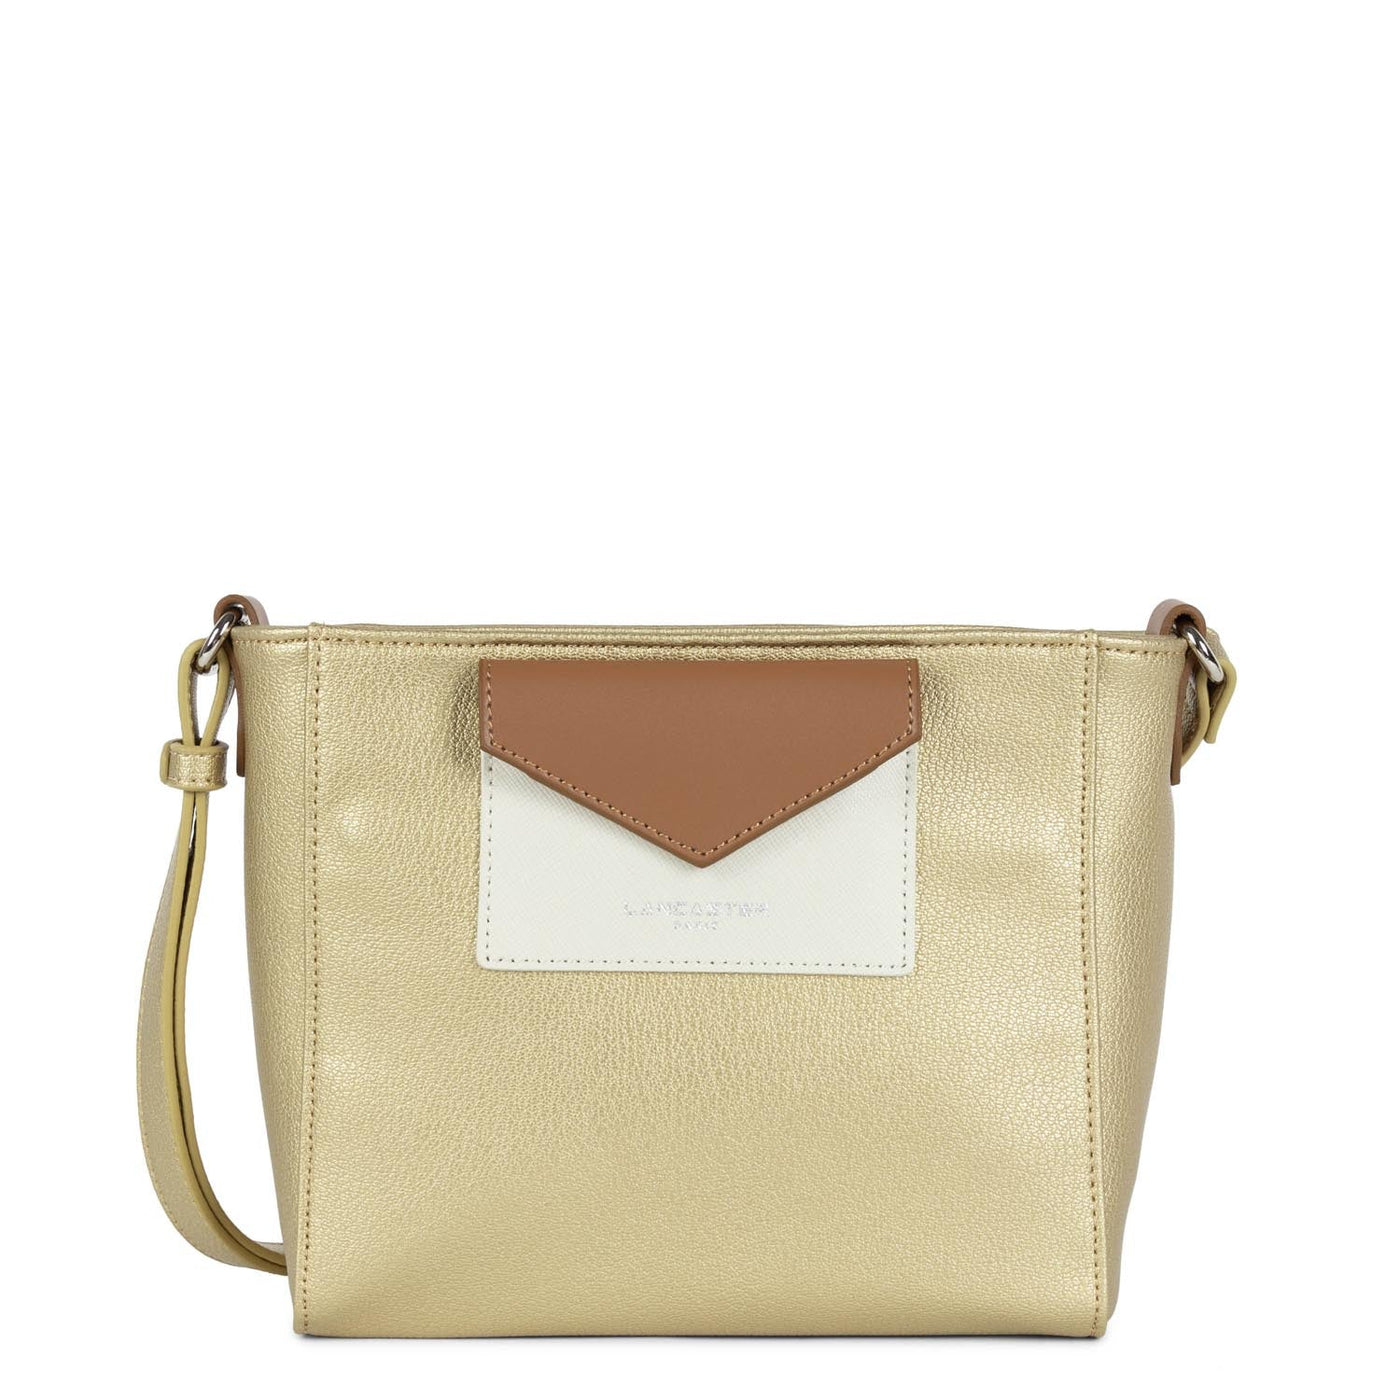 crossbody bag - maya #couleur_or-mat-beige-camel